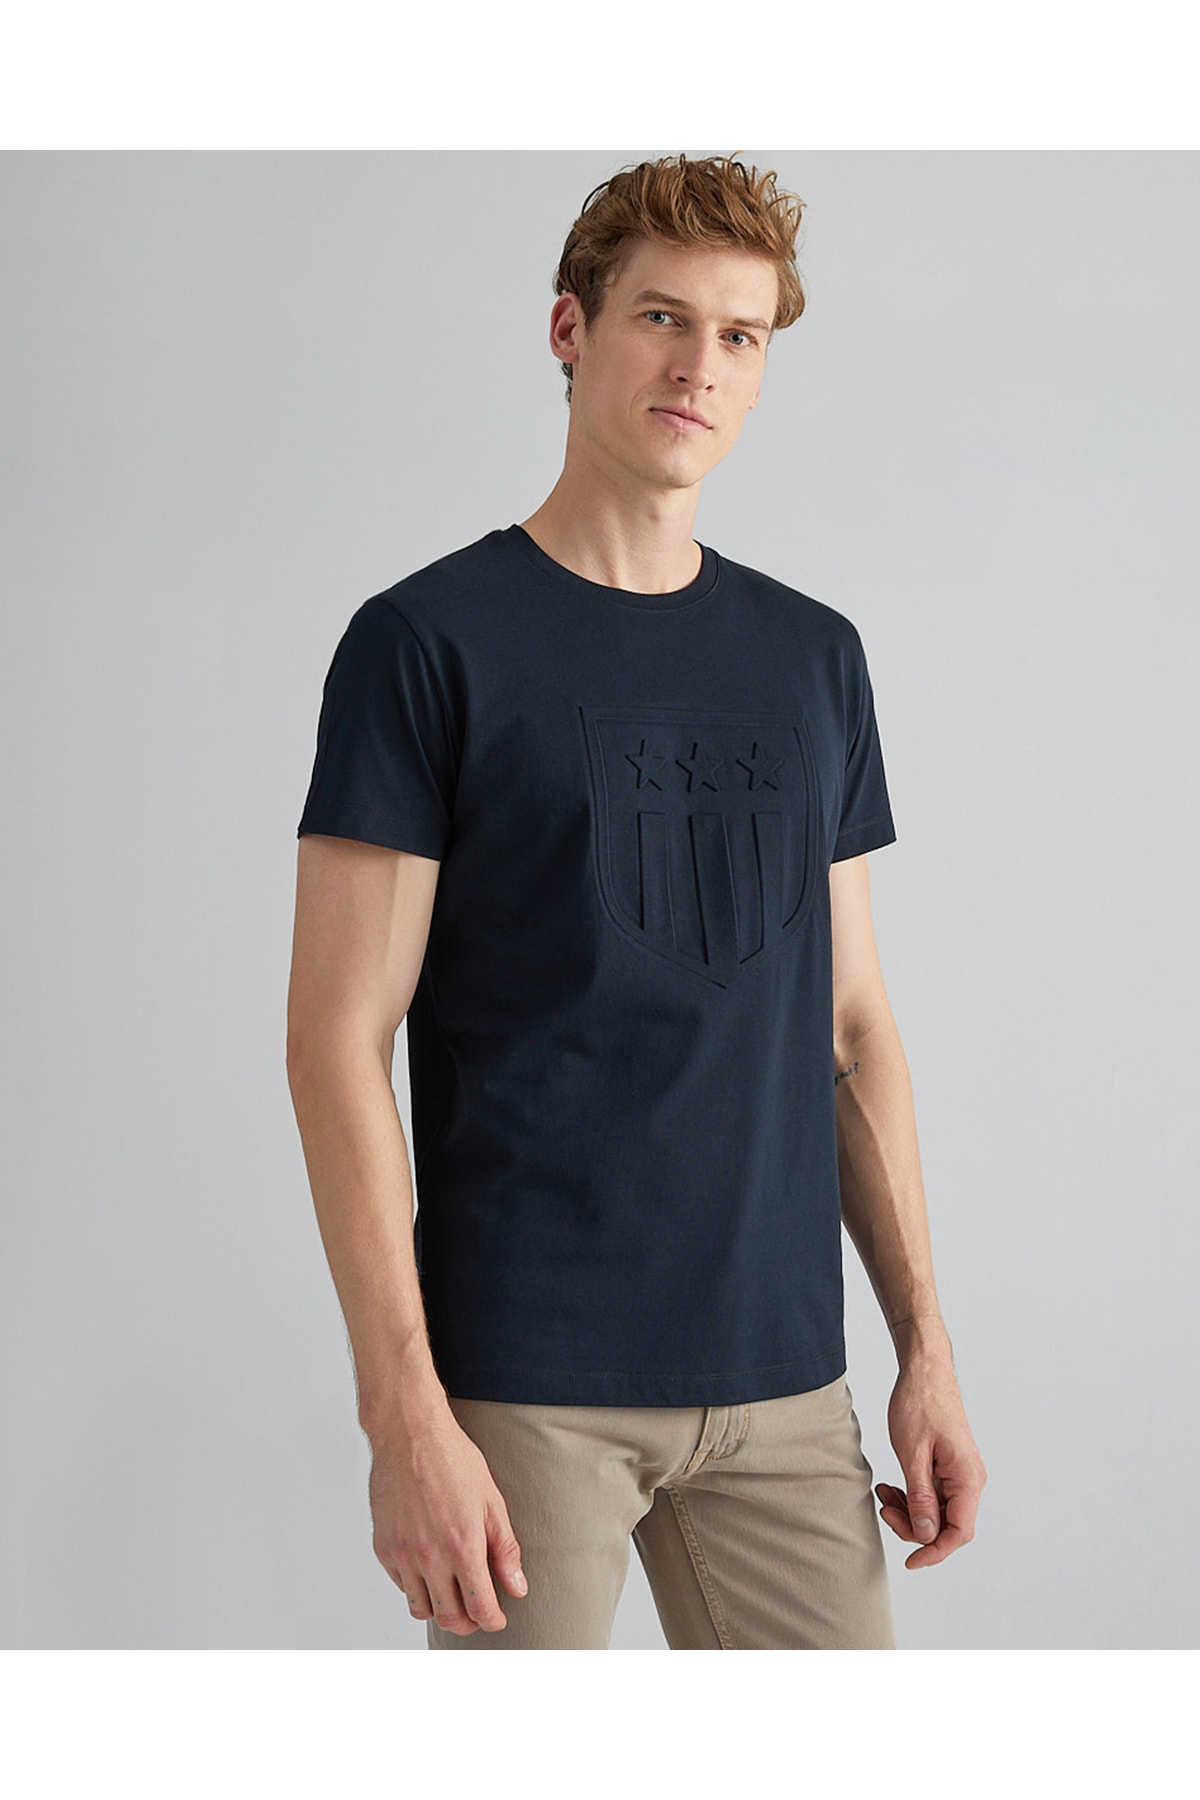 Gant Men's Regular Fit T-shirt